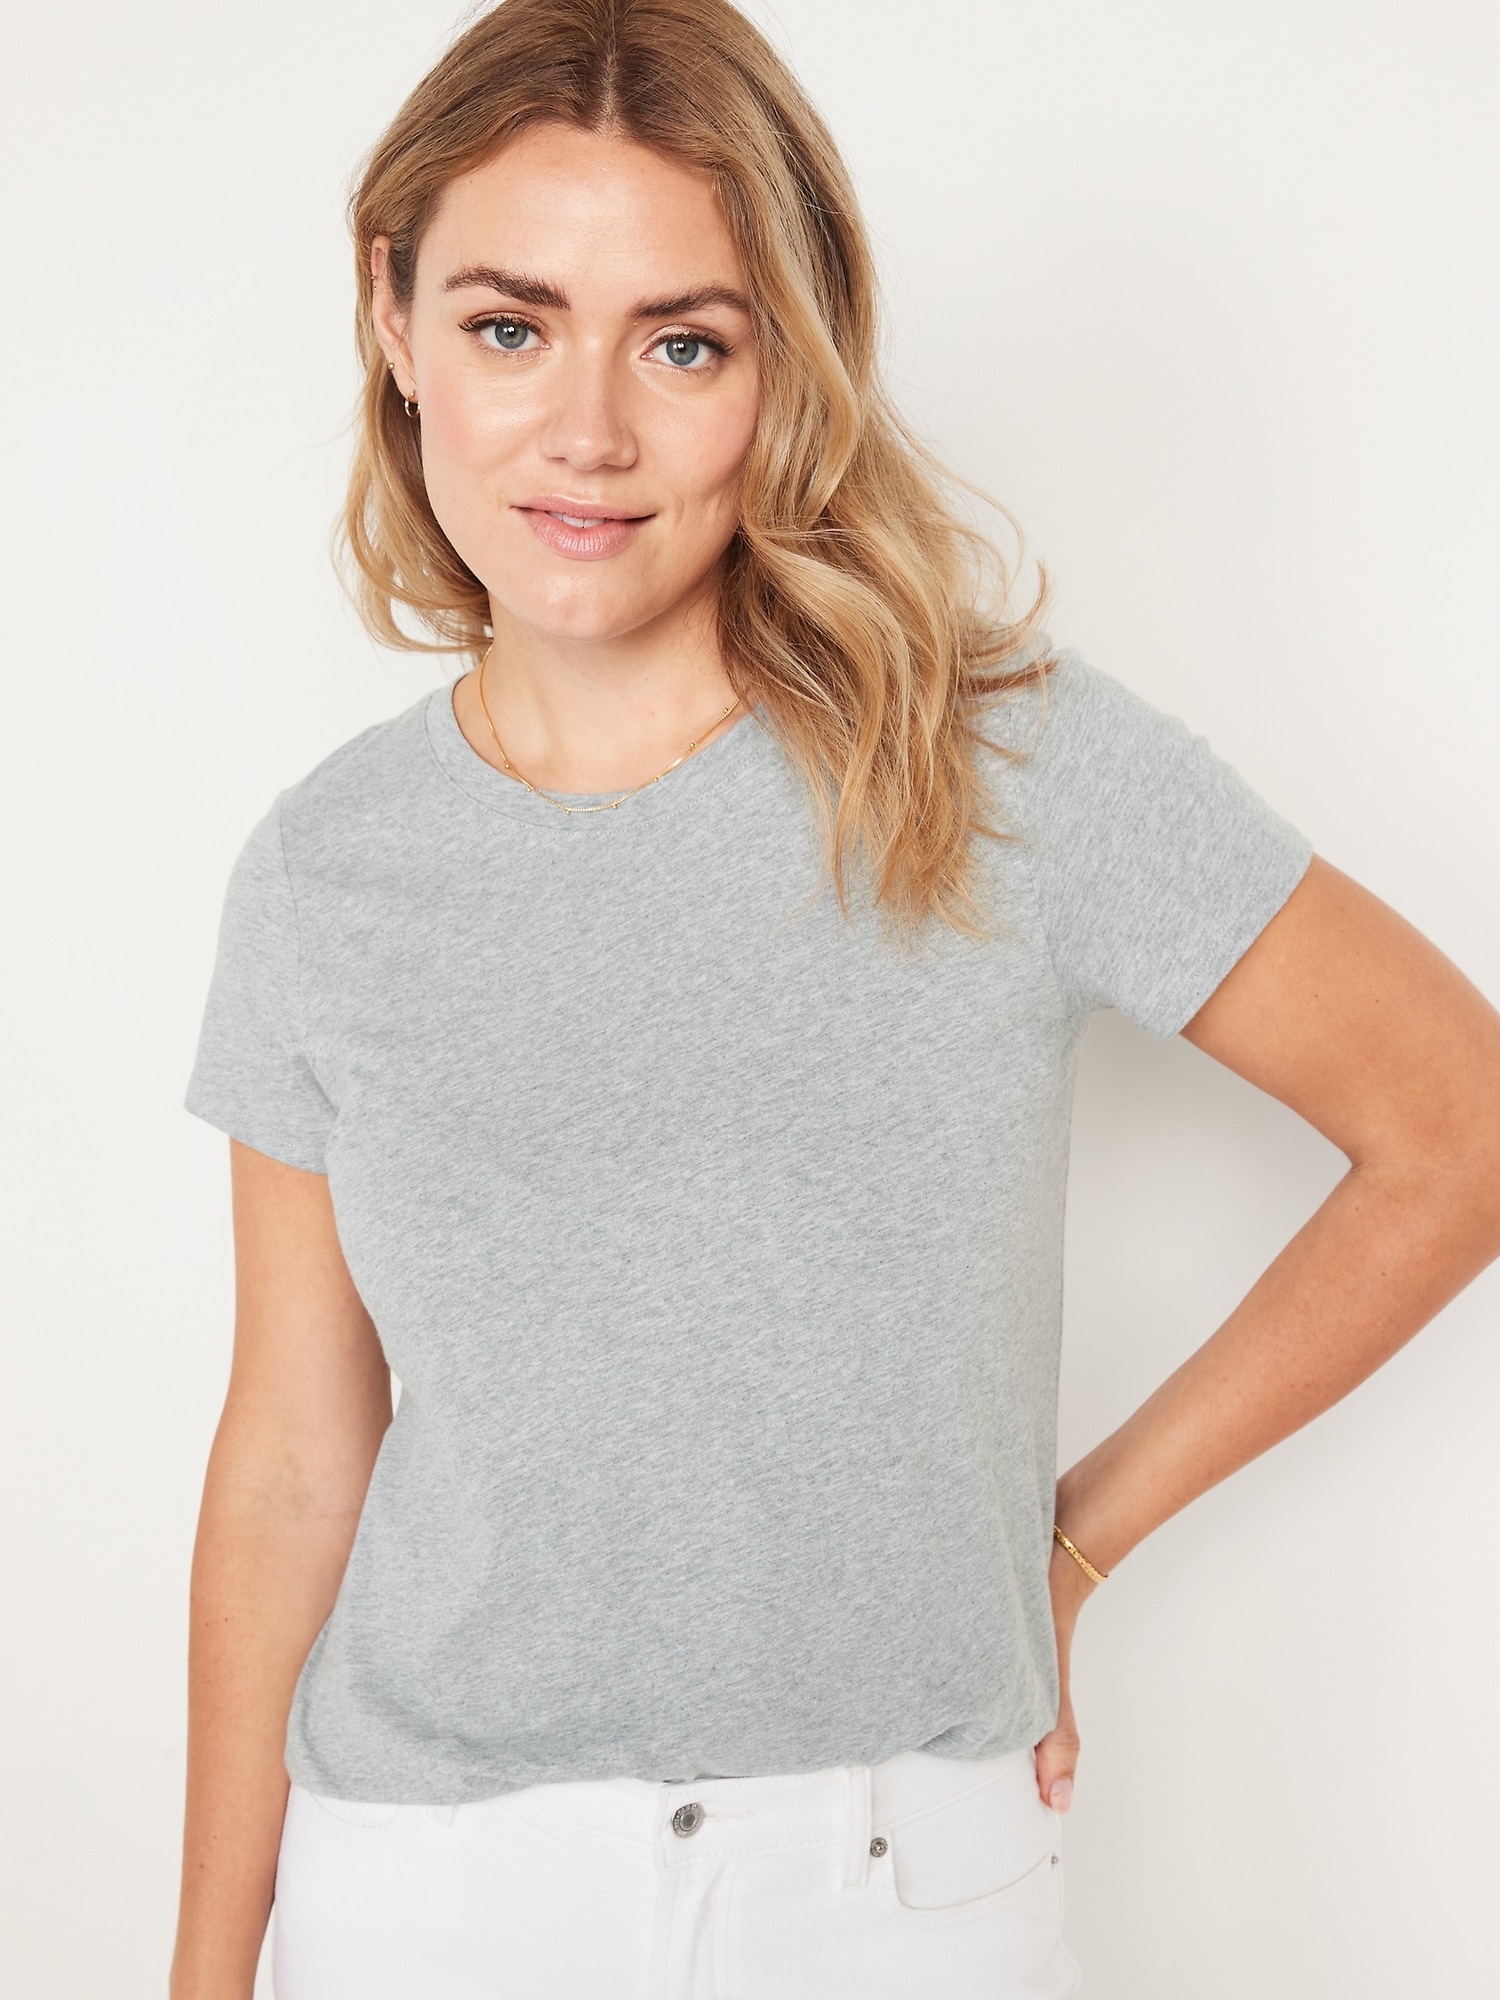 Womens Gray Shirt | estudioespositoymiguel.com.ar